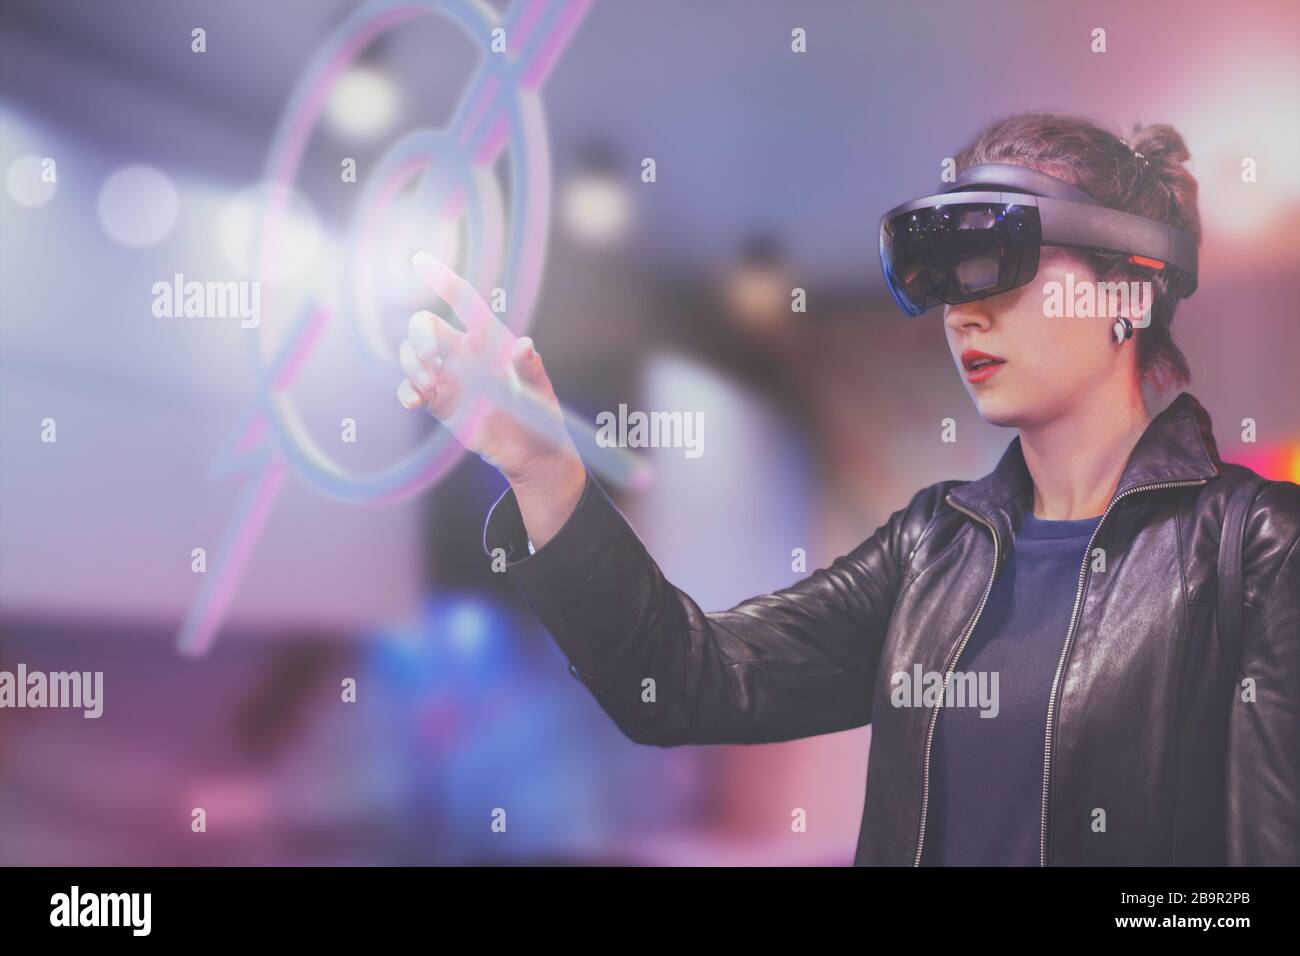 Portrait der jungen kaukasischen Frau unter Verwendung der erweiterten und virtuellen Realität mit holografischen Hololen-Brillen. Unscharfer Hintergrund in Pink, Magenta und Blau. Fu Stockfoto